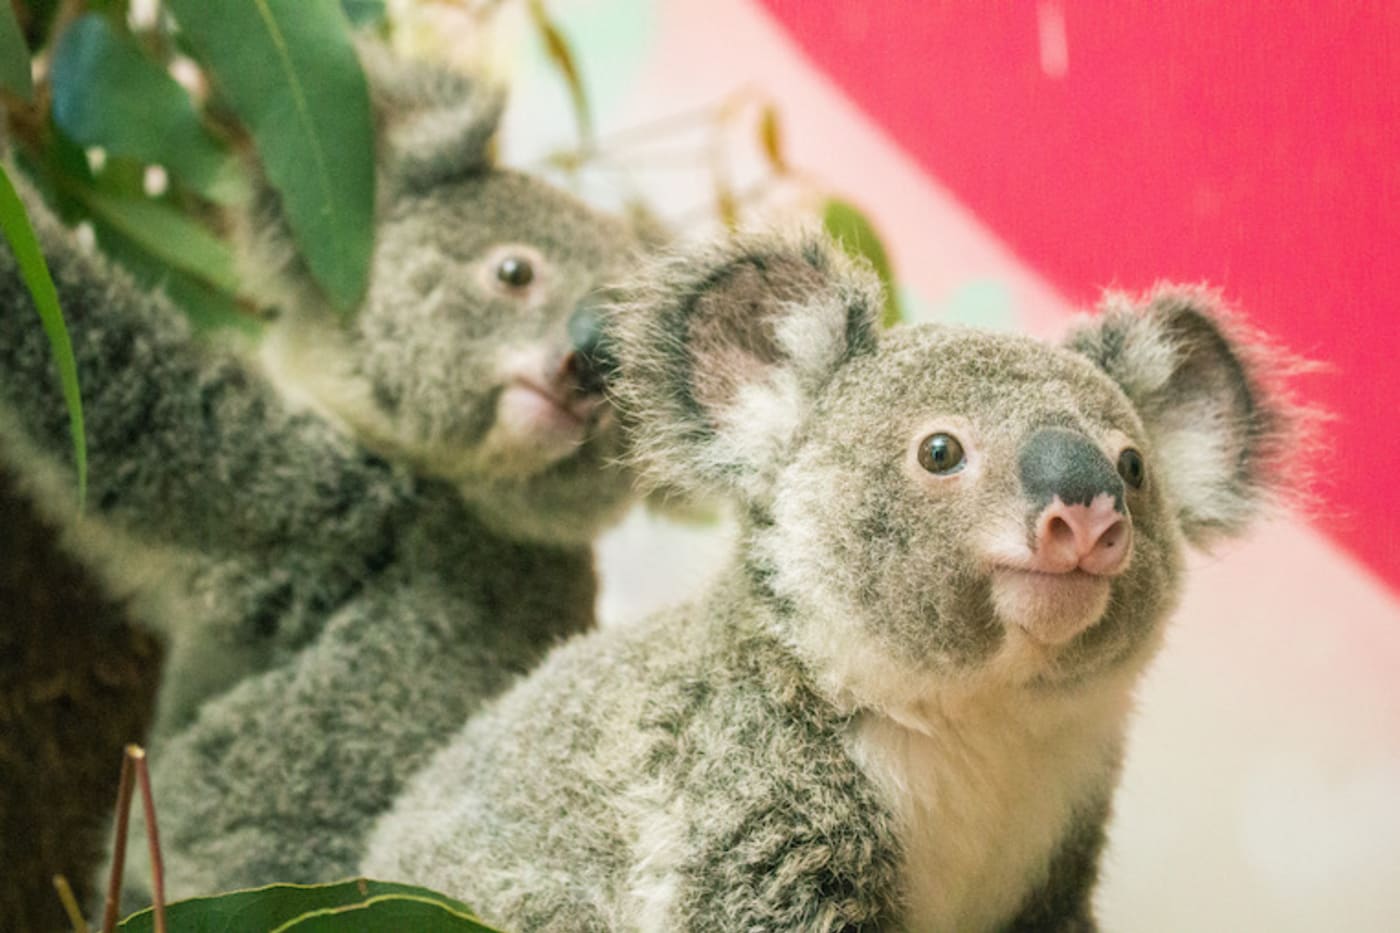 Koala joeys in care at Ipswich Koala Protect Society